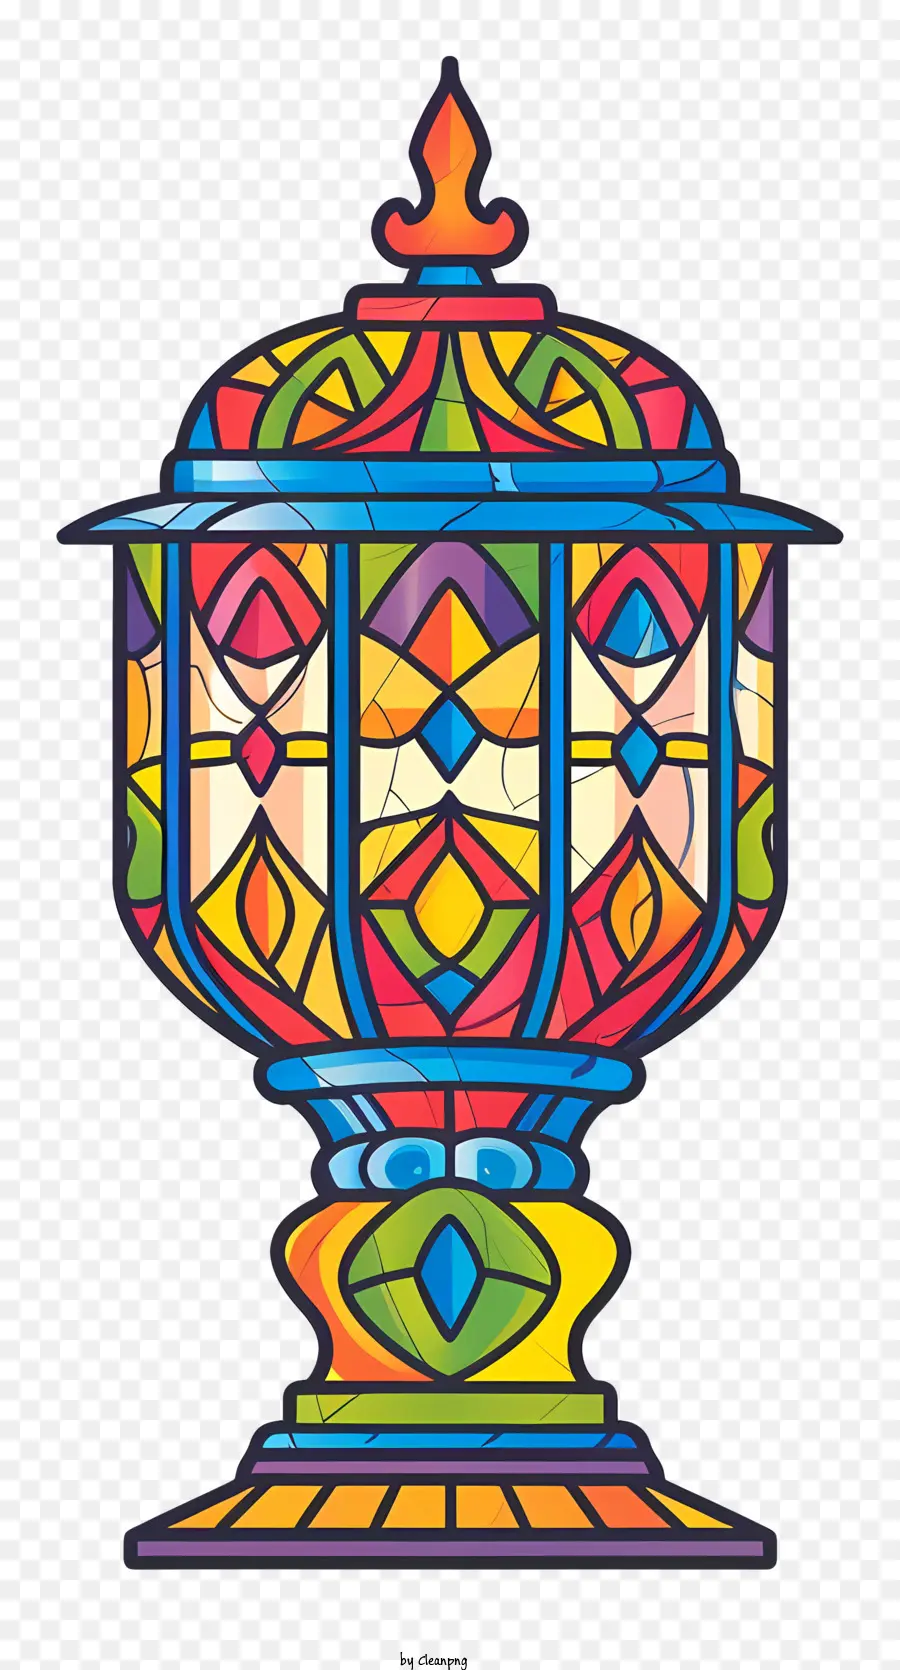 islamische Lampe - Bunte, mit Blumen gefüllte Vase mit komplizierten Mustern